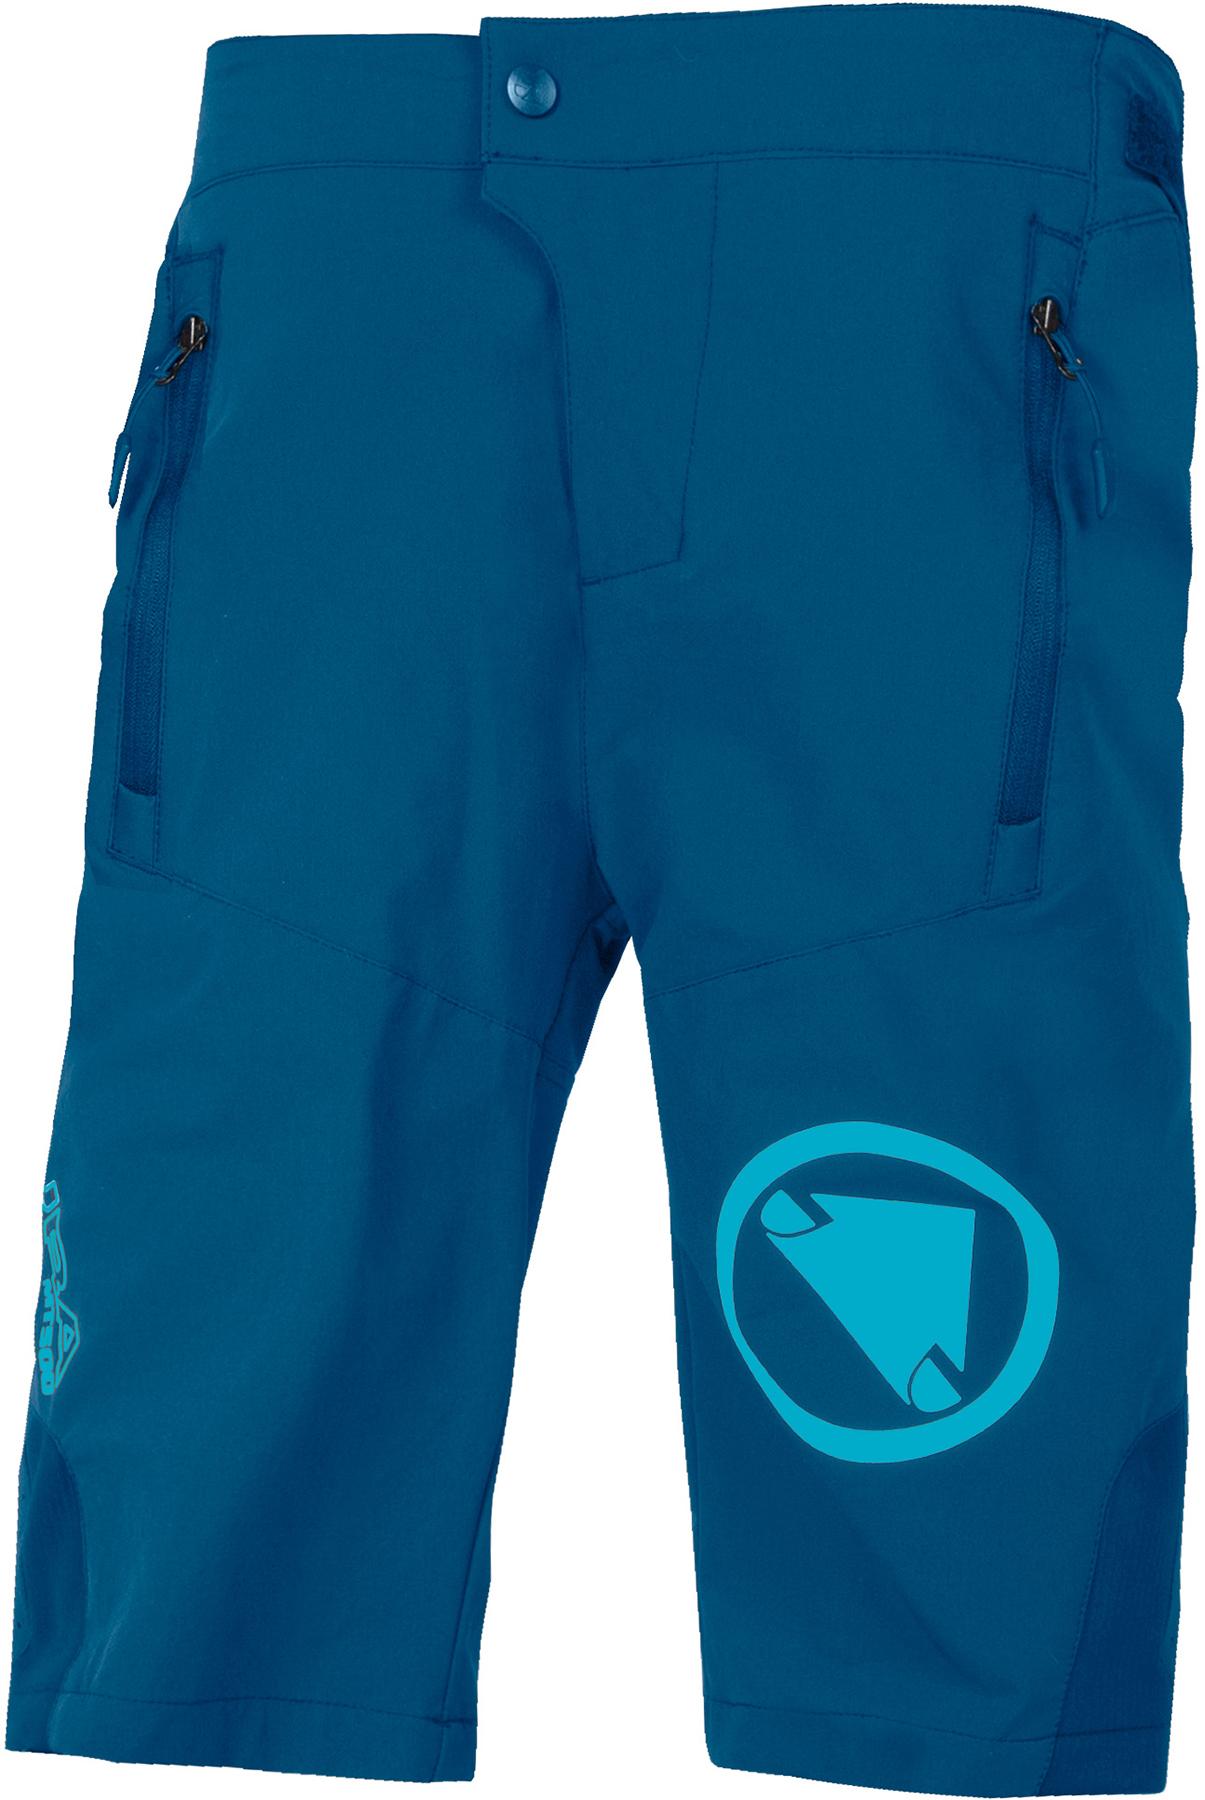 Endura Kids Mt500jr Burner Shorts With Liner - Blueberry